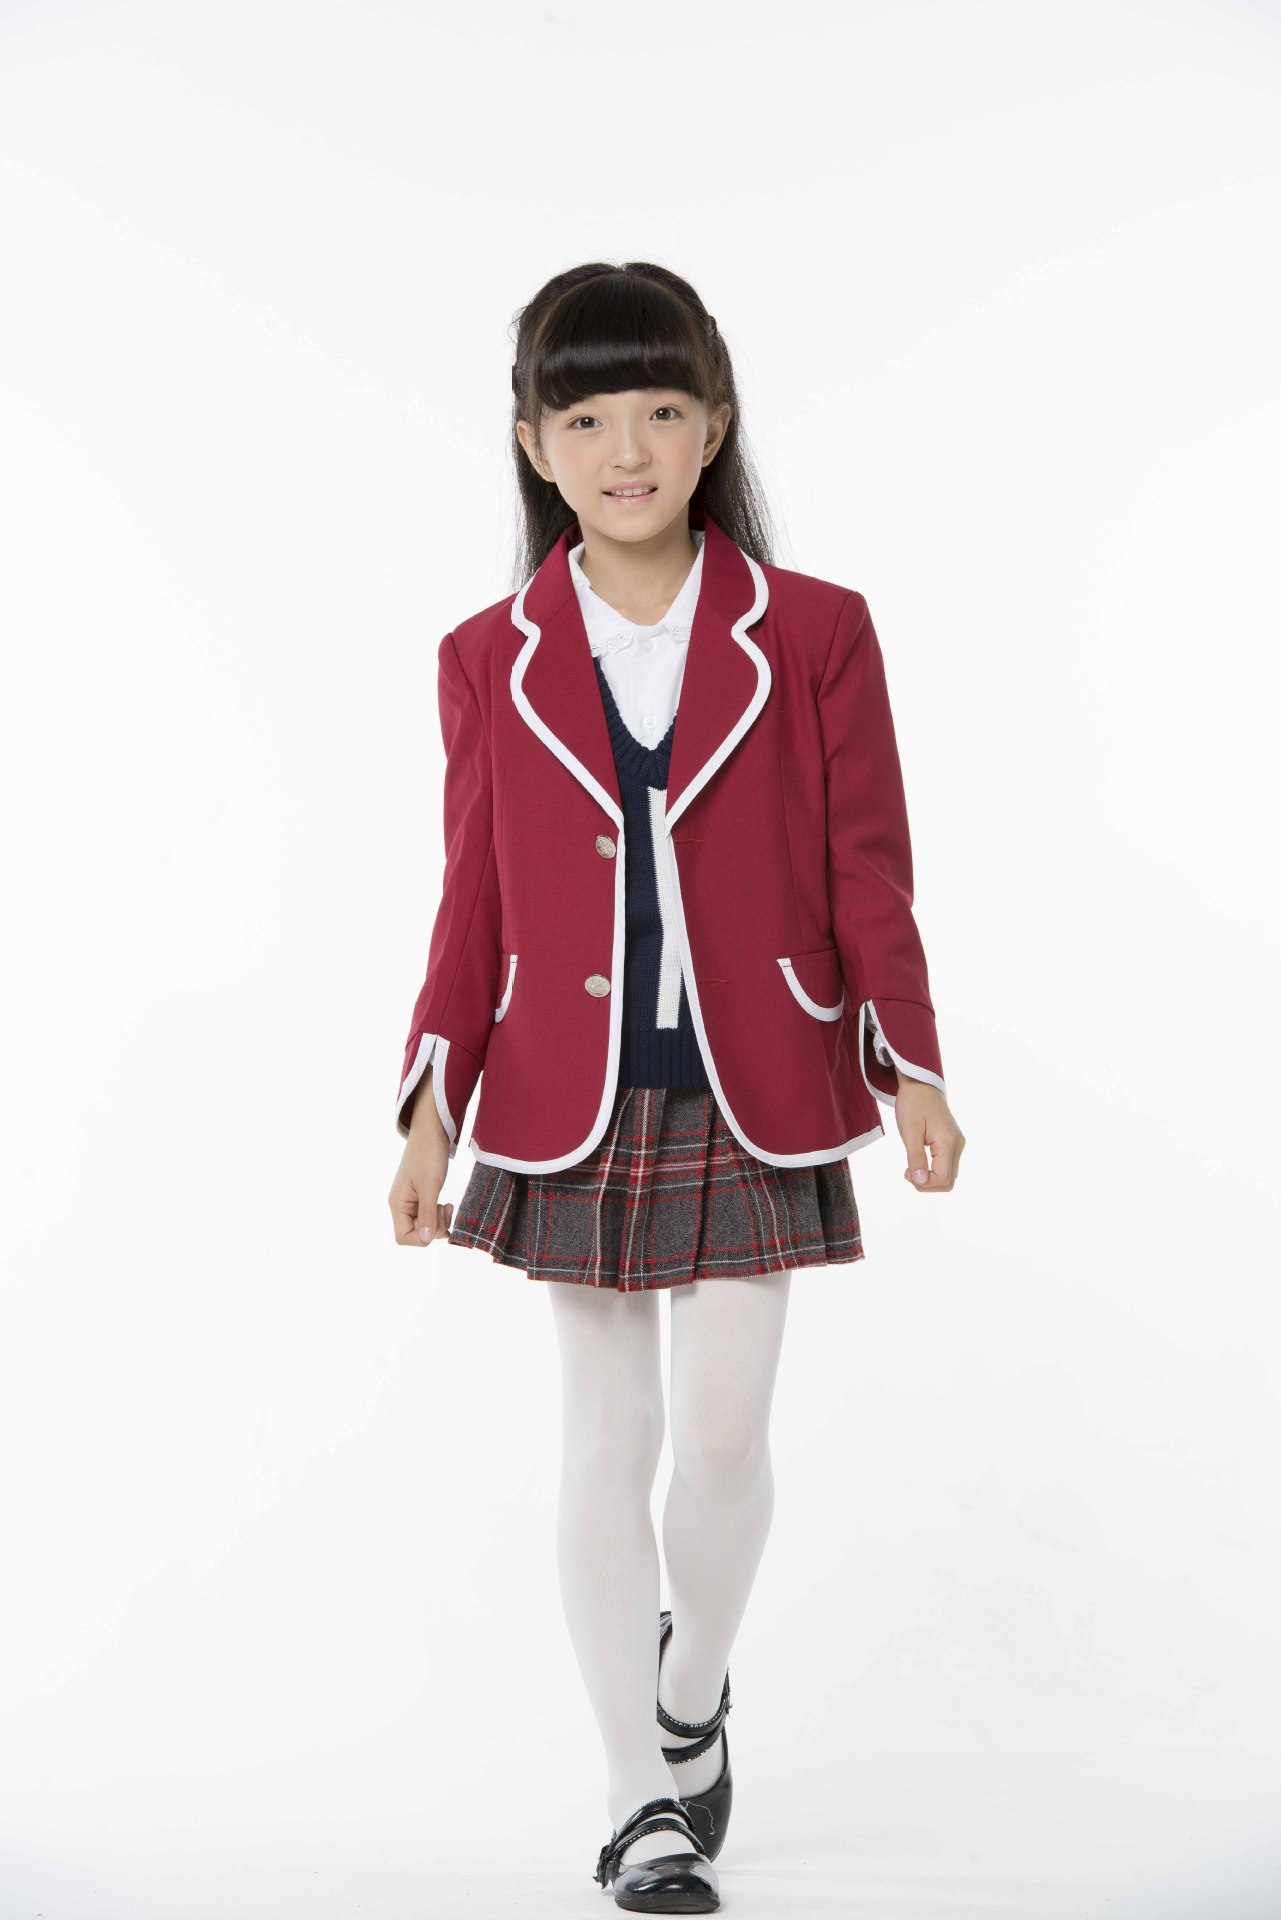 校服款式:运动装 面料:棉布 货源类别:现货 品牌:安徽百裕 颜色:红色